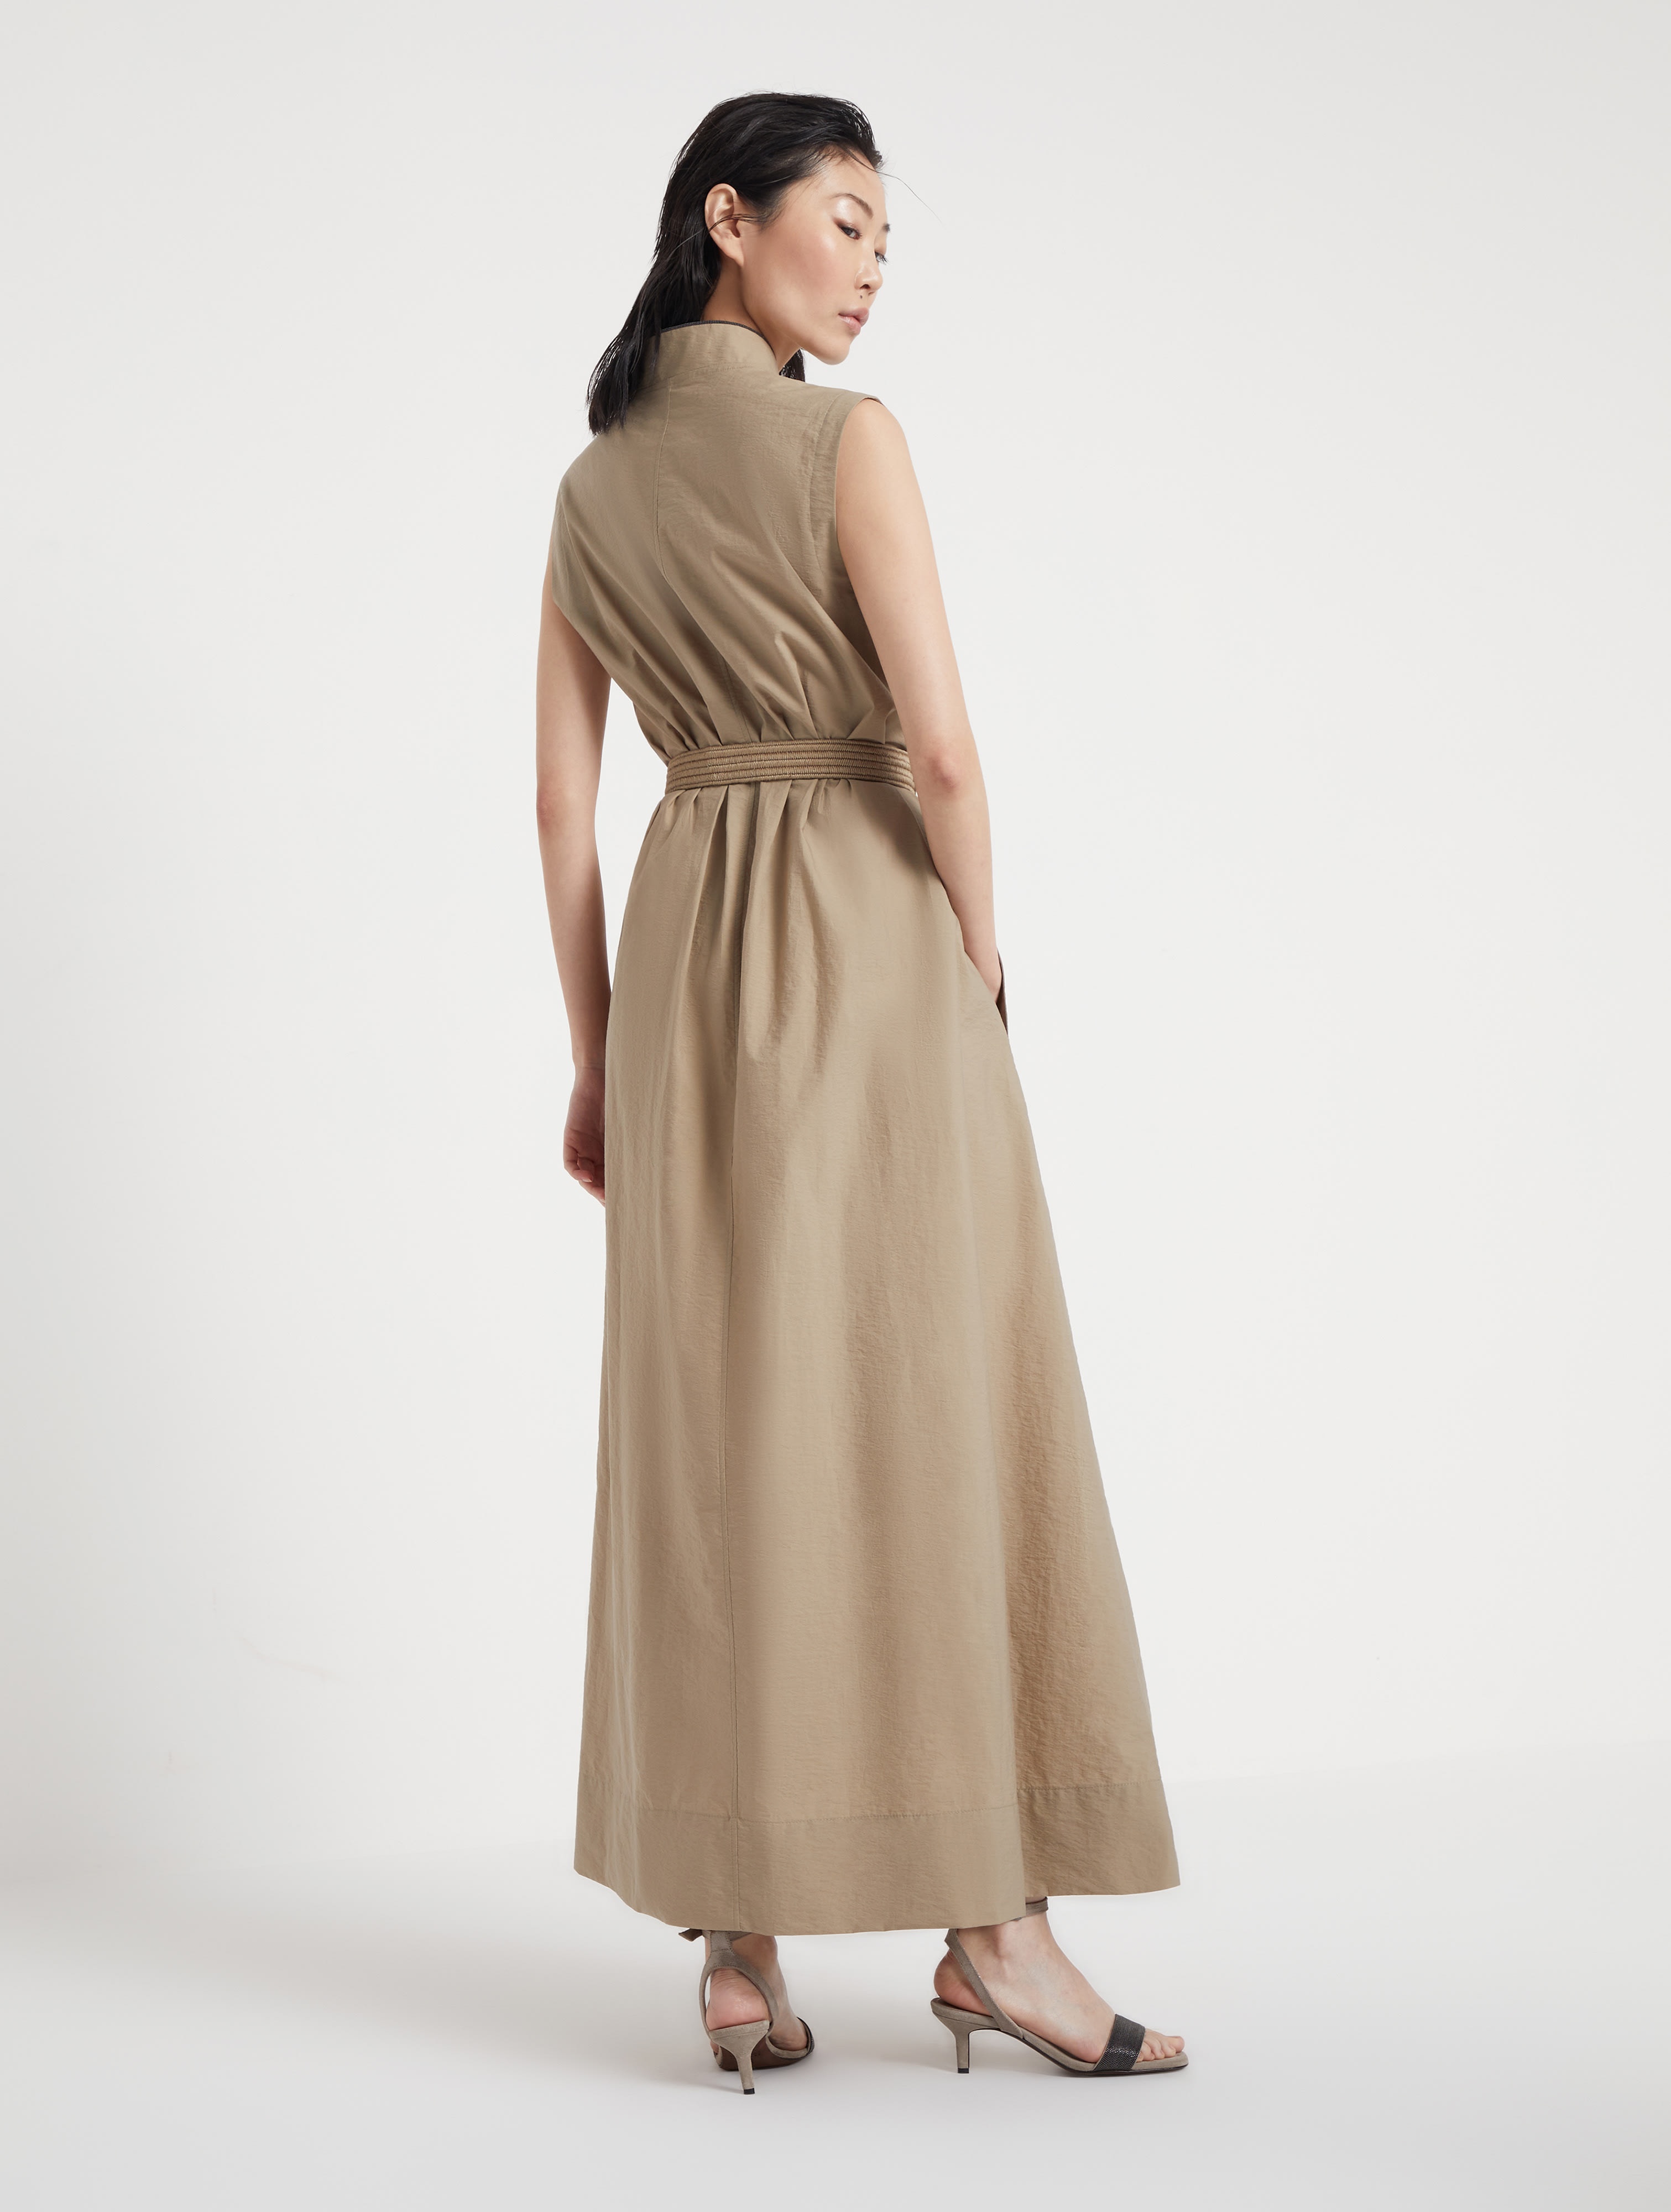 Techno cotton poplin dress with raffia belt and shiny trim - 2